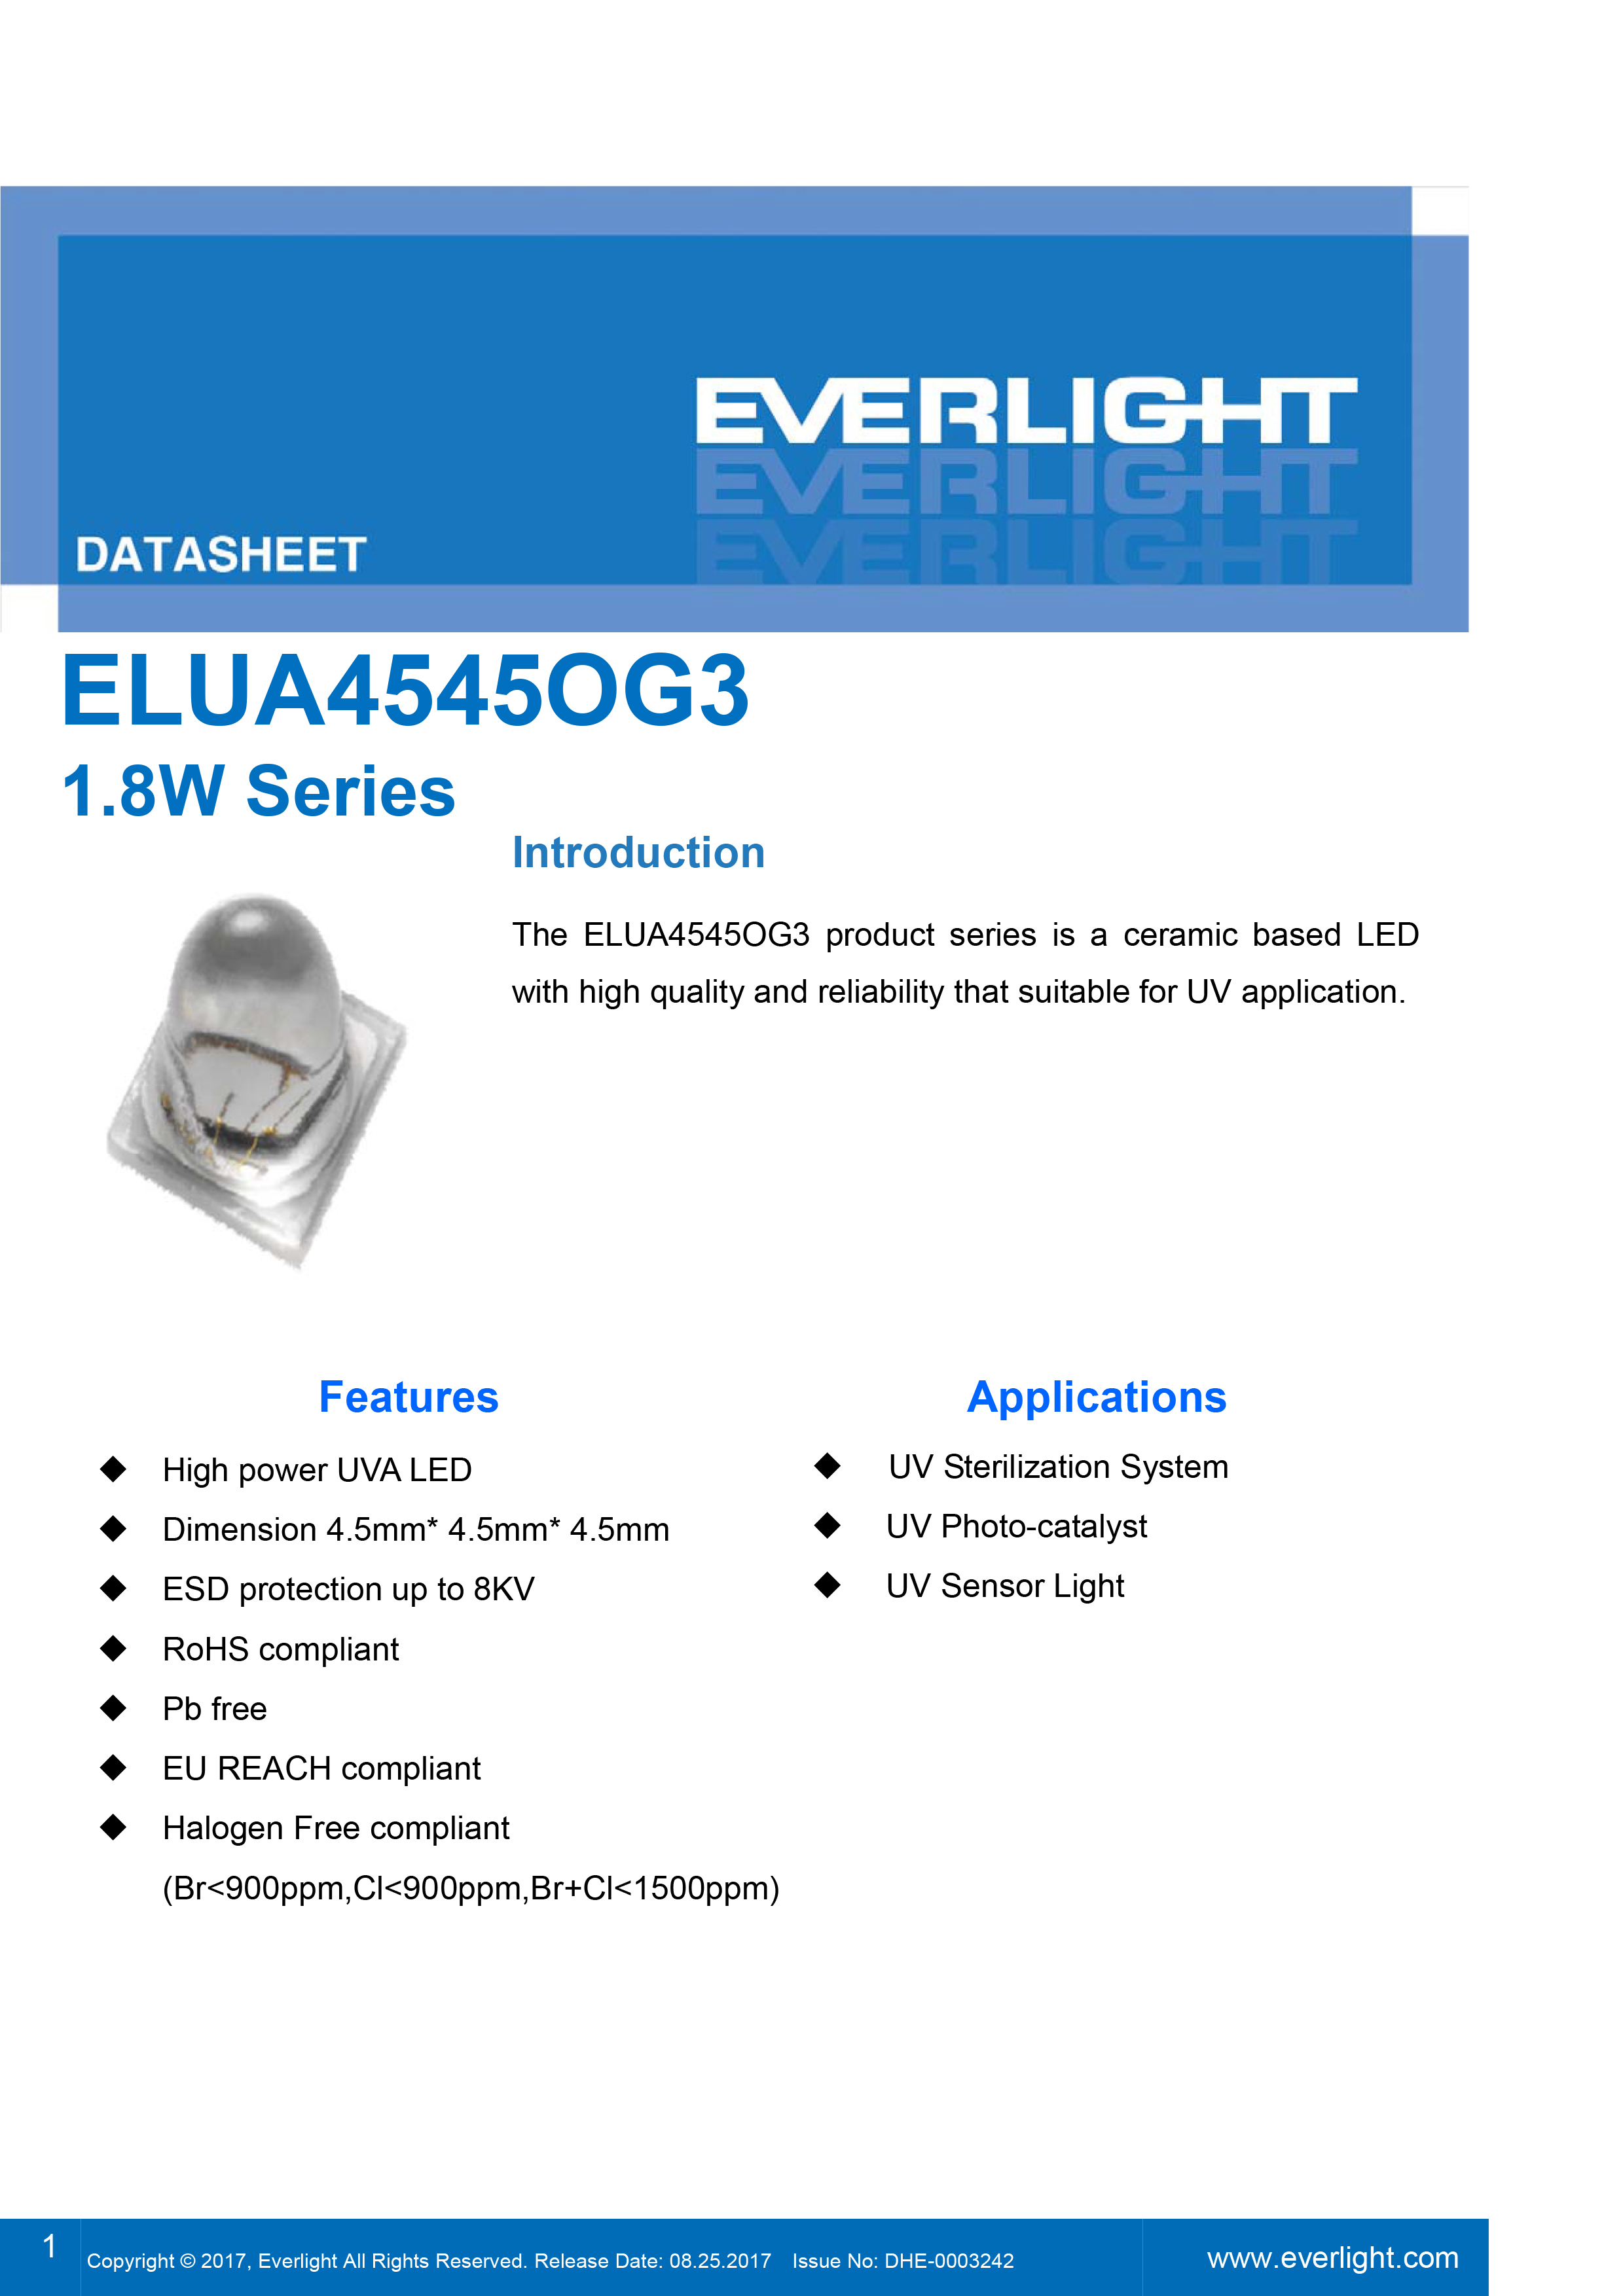 EVERLIGHT SMD 1.8W UV LED ELUA4545OG3-P6070U13241500-VD1M Datasheet